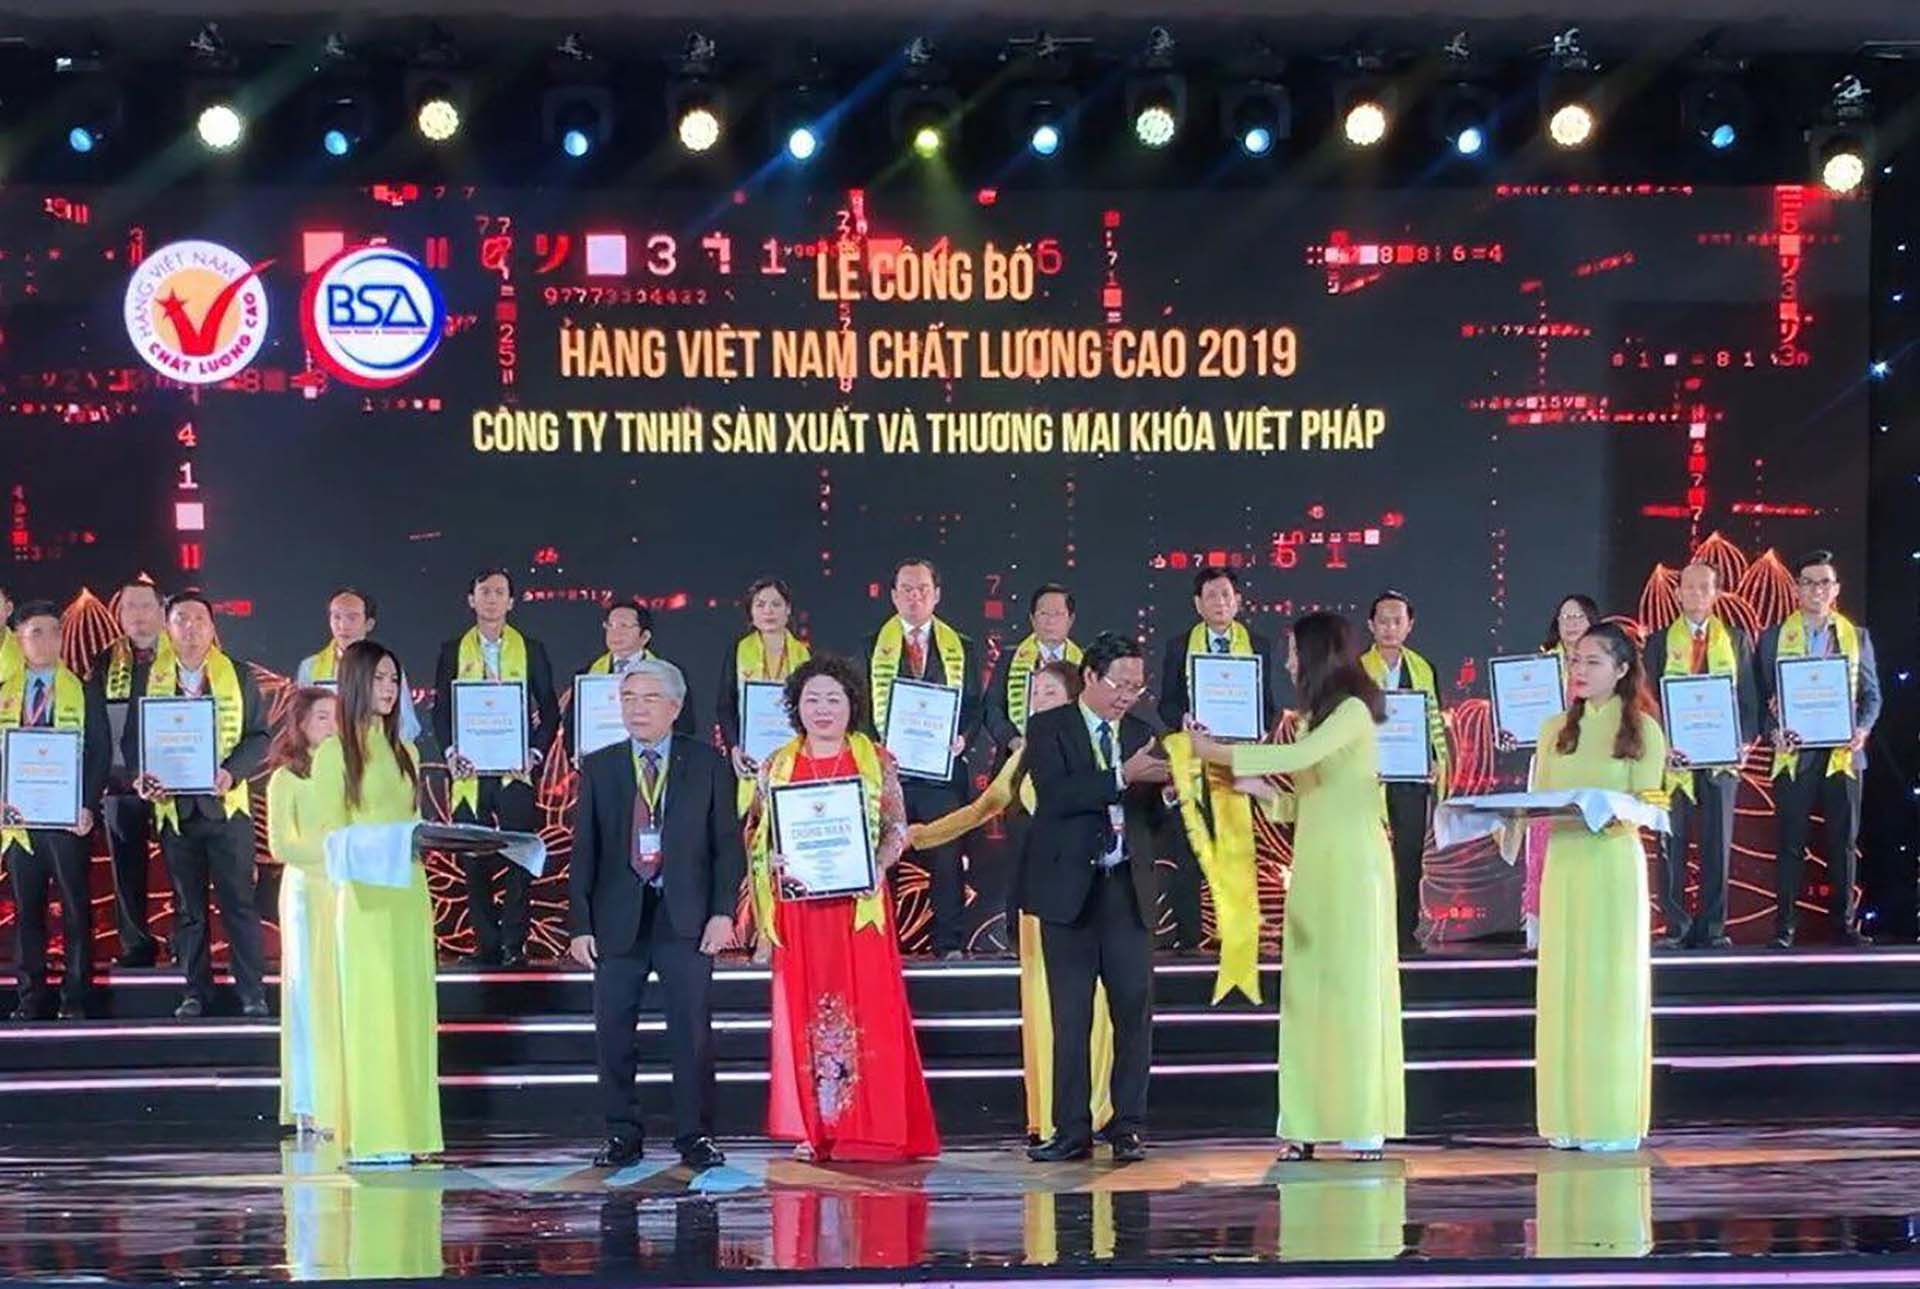 Tổng Giám đốc Công ty TNHH sản xuất và thương mại khóa Việt Pháp Dương Thị Hà nhận bằng chứng nhận Hàng Việt Nam chất lượng cao 2019.